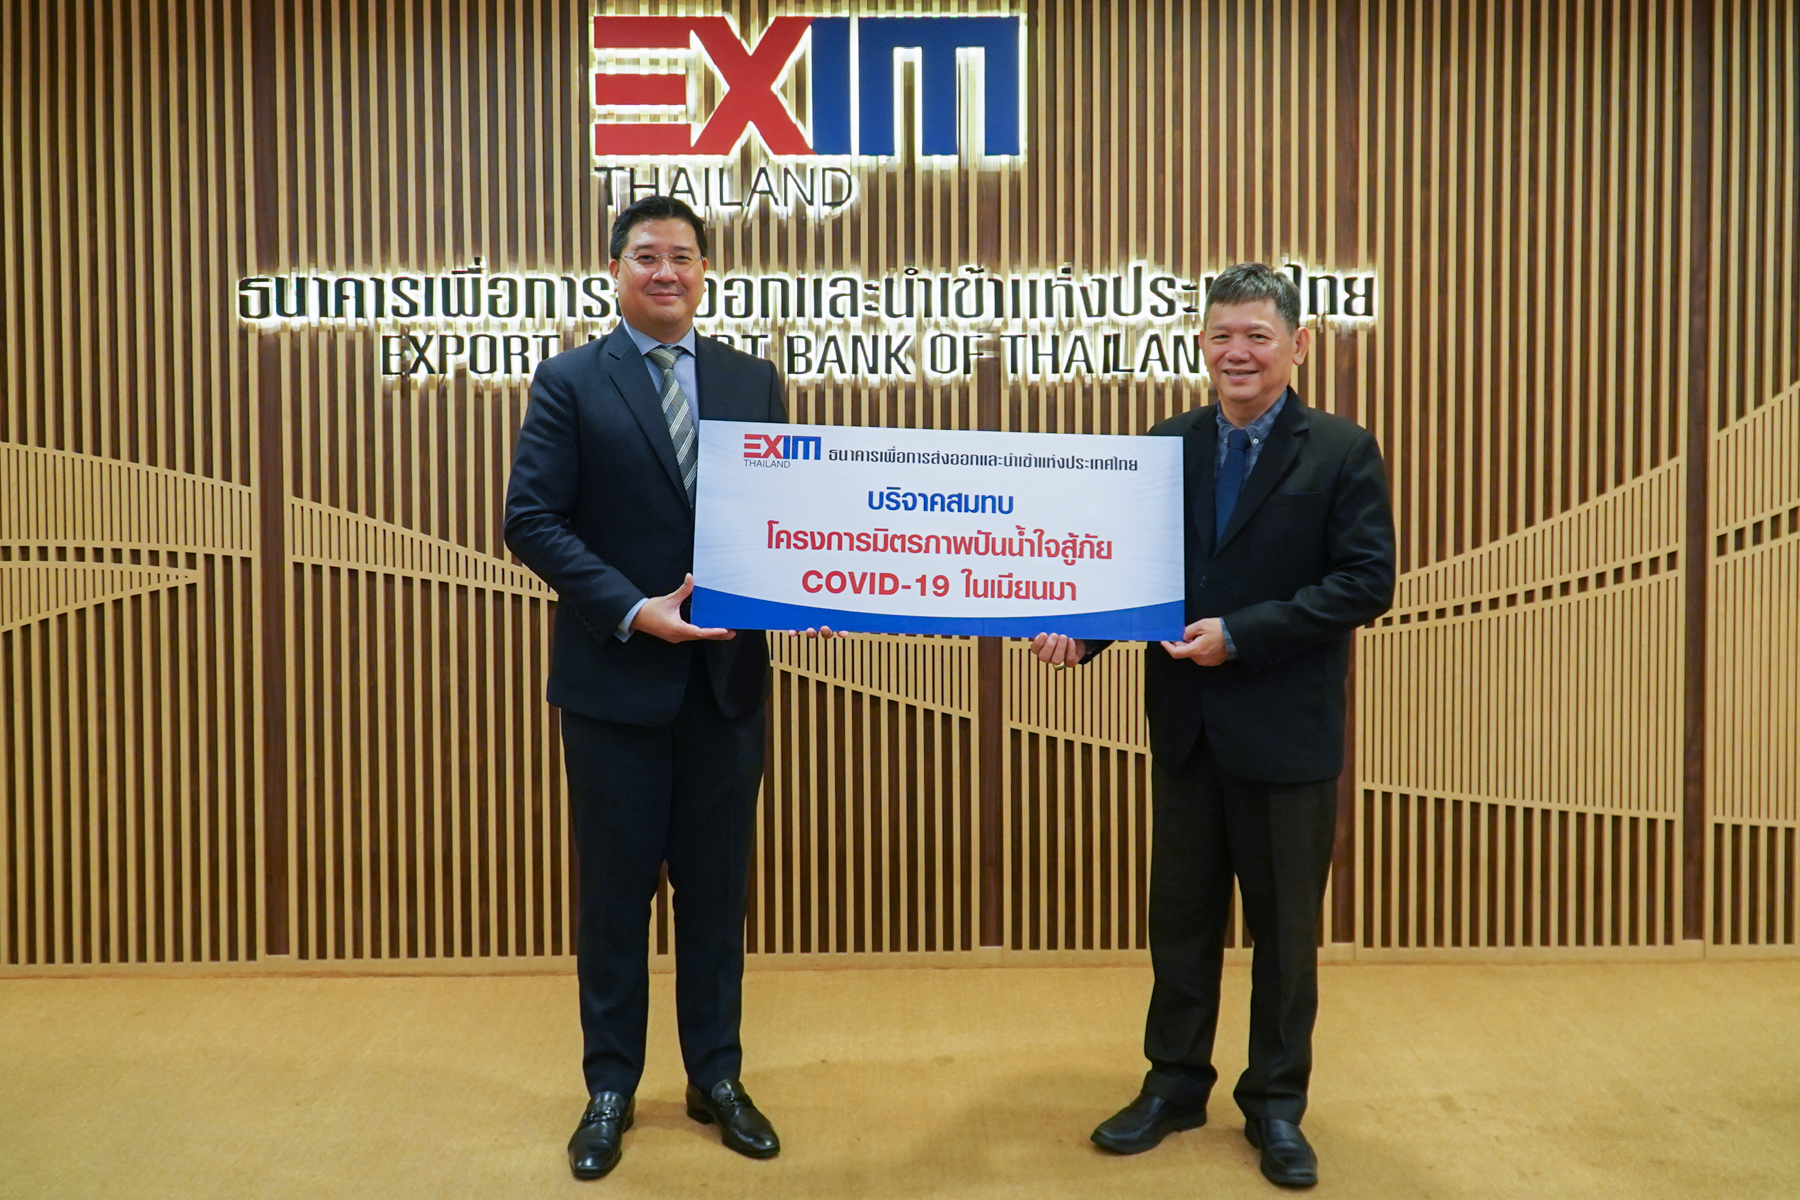 EXIM BANK สนับสนุนเวชภัณฑ์และอุปกรณ์การแพทย์บรรเทาโควิด-19 ในเมียนมา ผ่านสภาธุรกิจไทย-เมียนมา